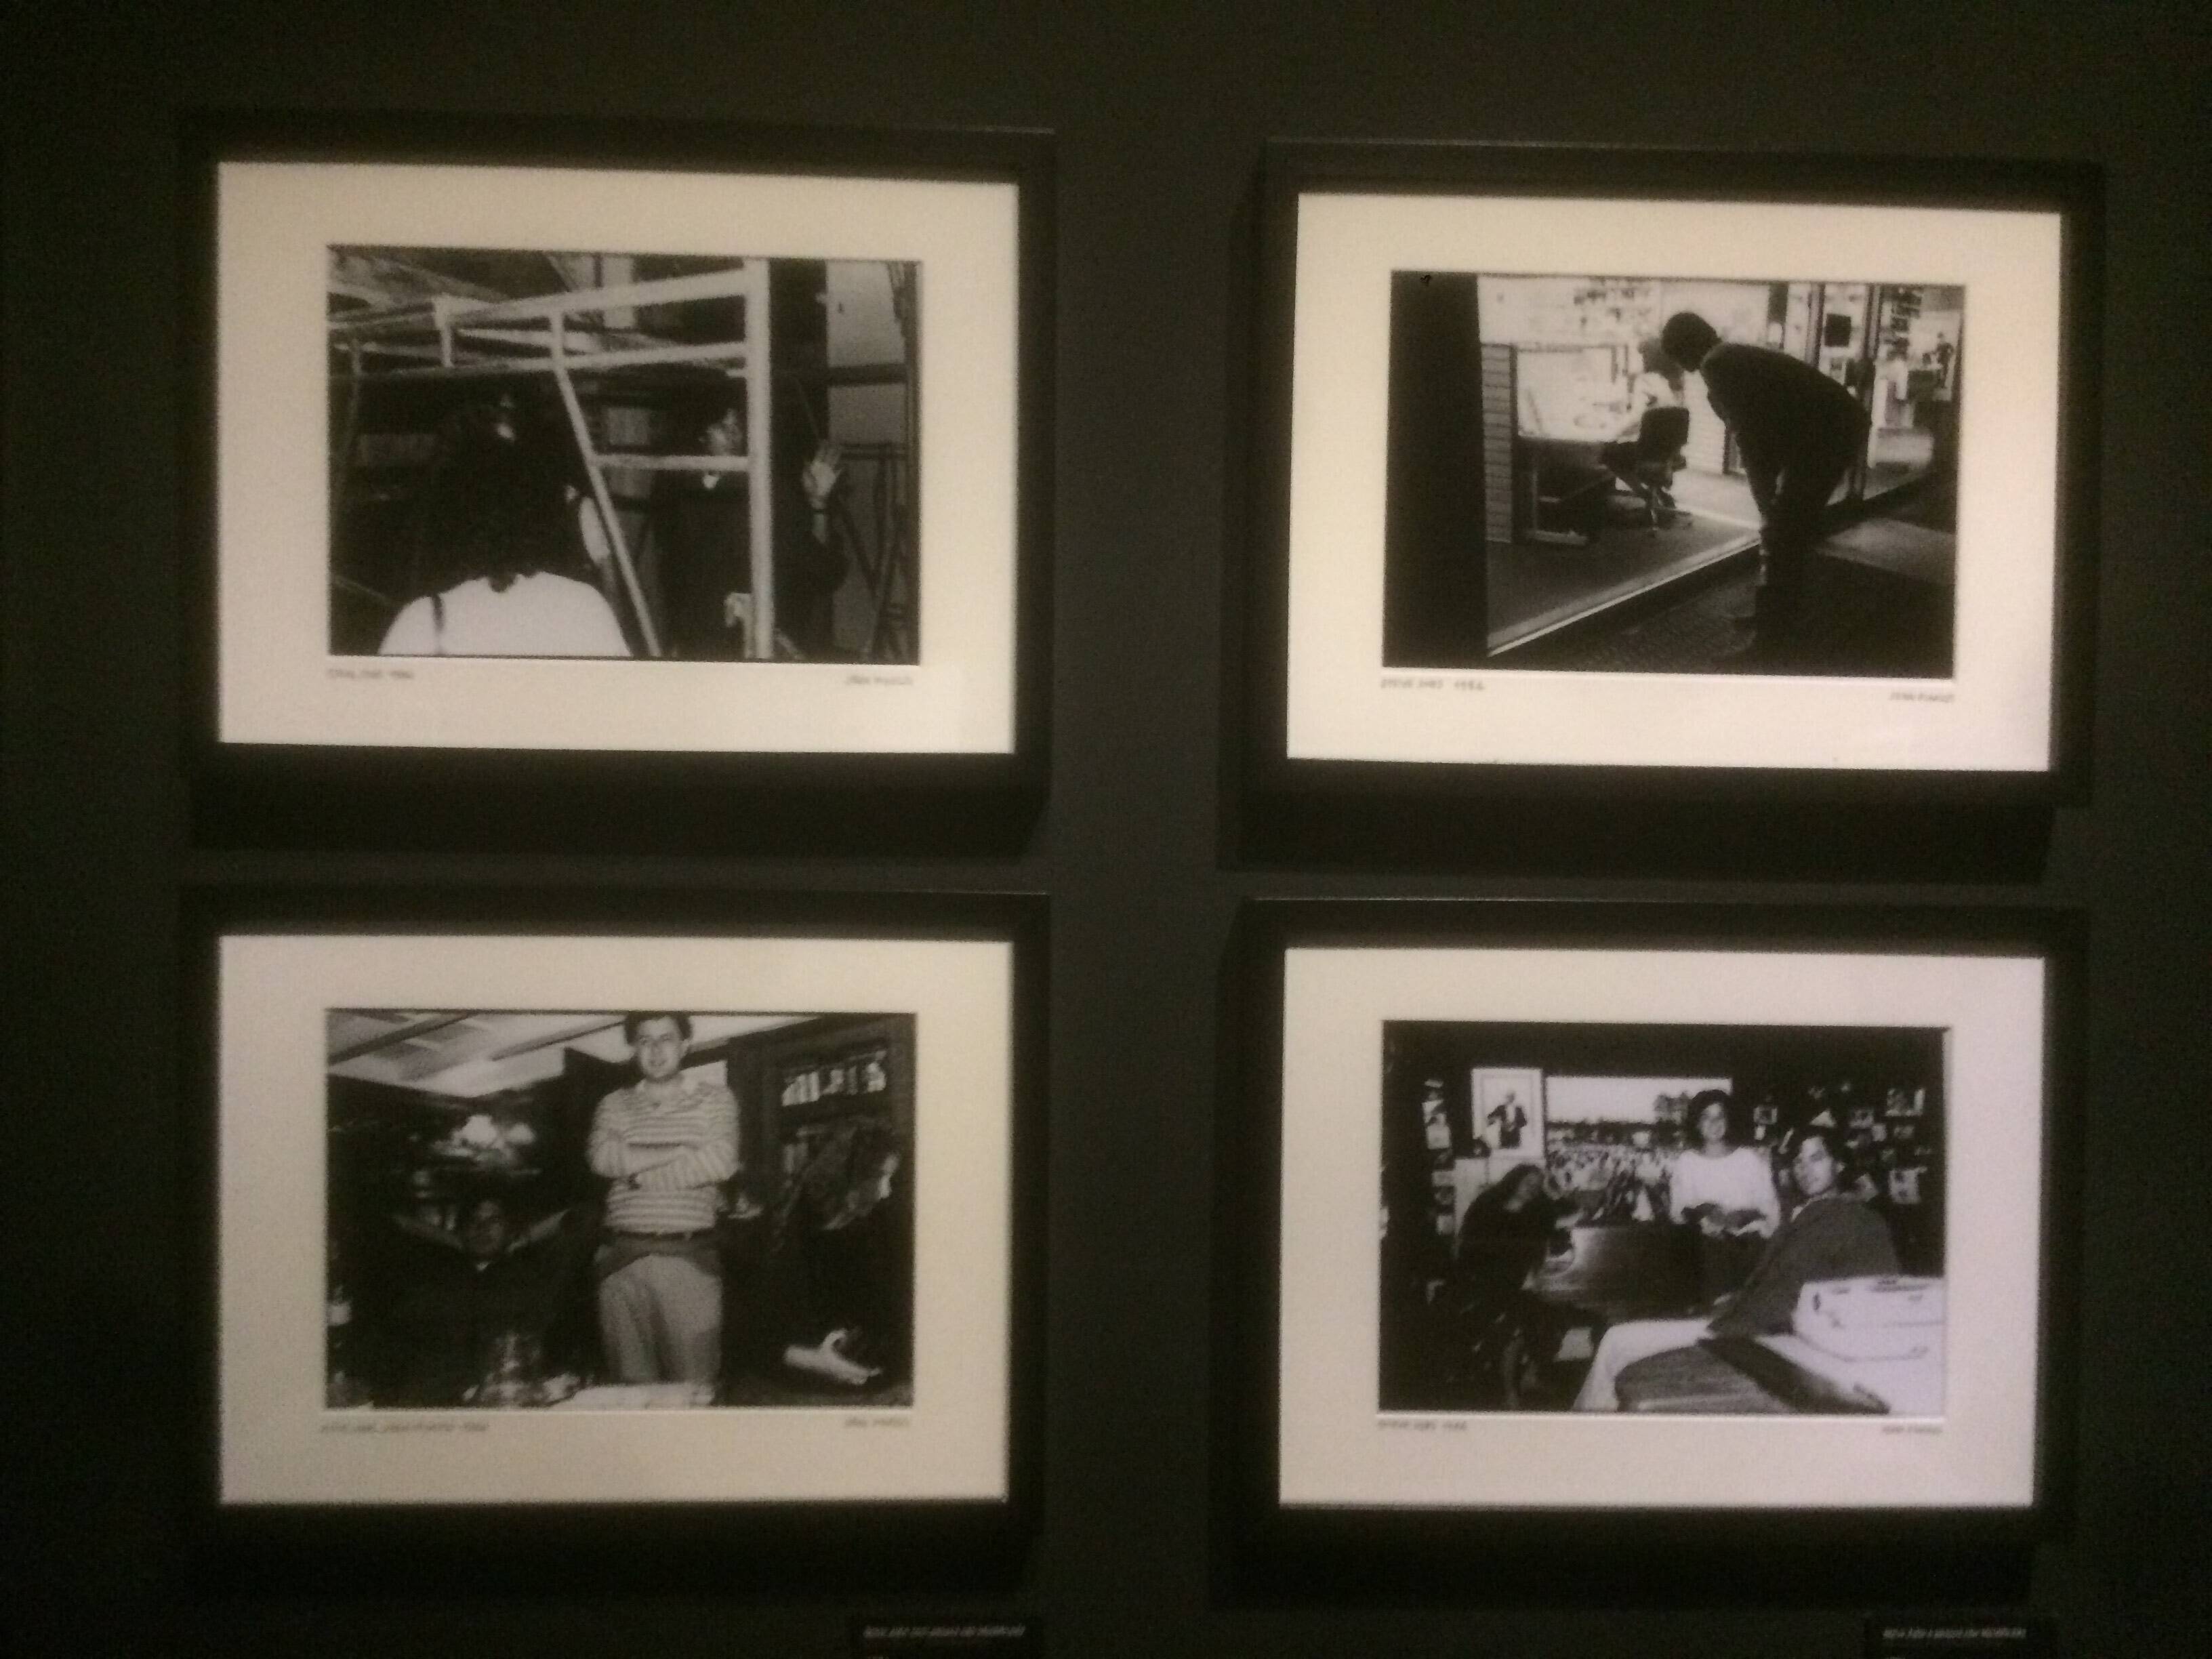 Fotos da exposição "Steve Jobs, o visionário" no Museu da Imagem e do Som de São Paulo. Foto: Caio Menezes